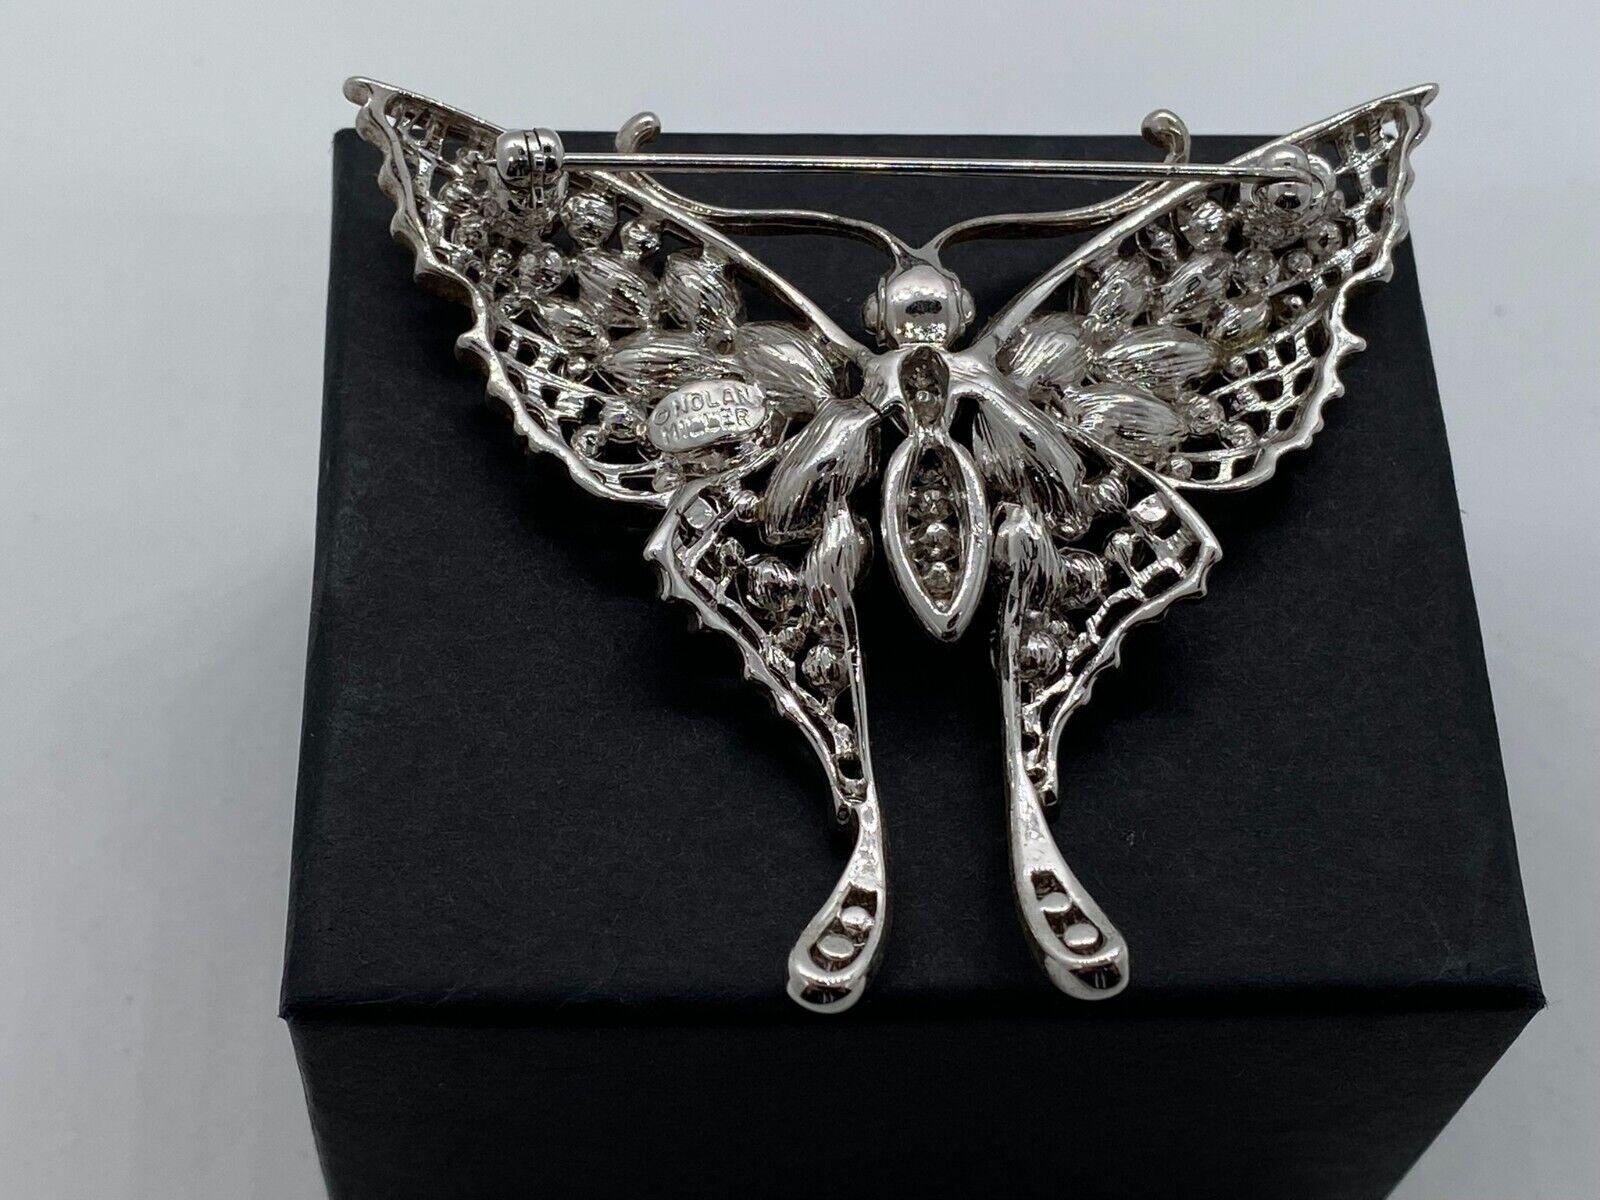 nolan miller butterfly brooch